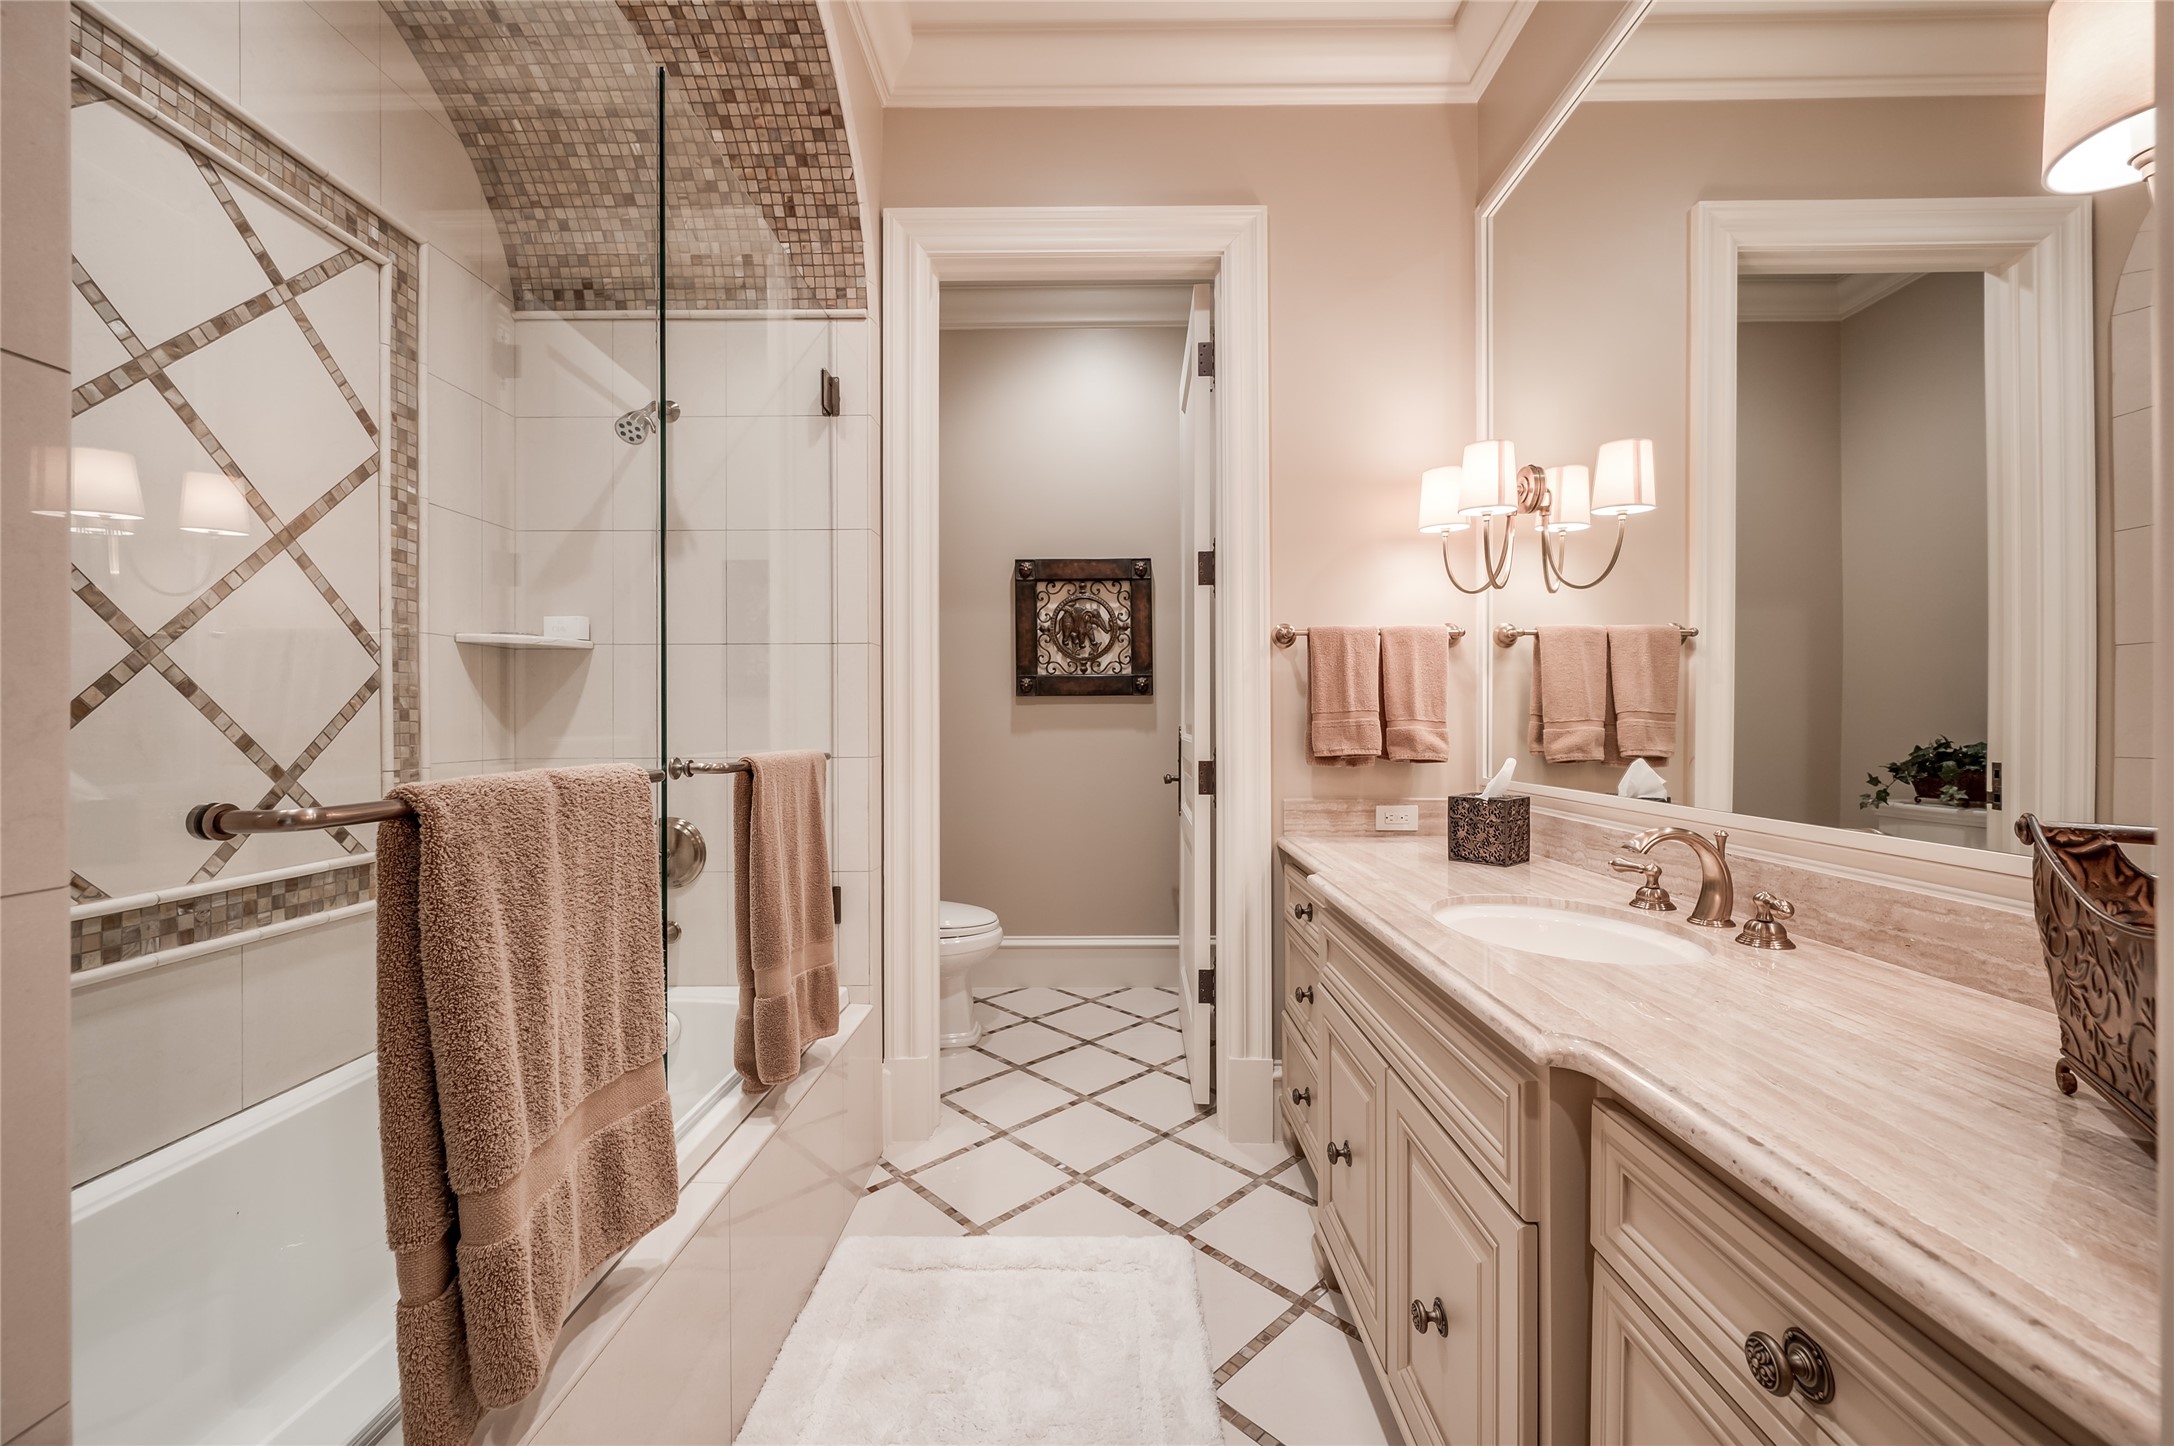 [En Suite Bath]
En suite bath with porcelain floor, marble sink deck, and glass-enclosed tub shower.